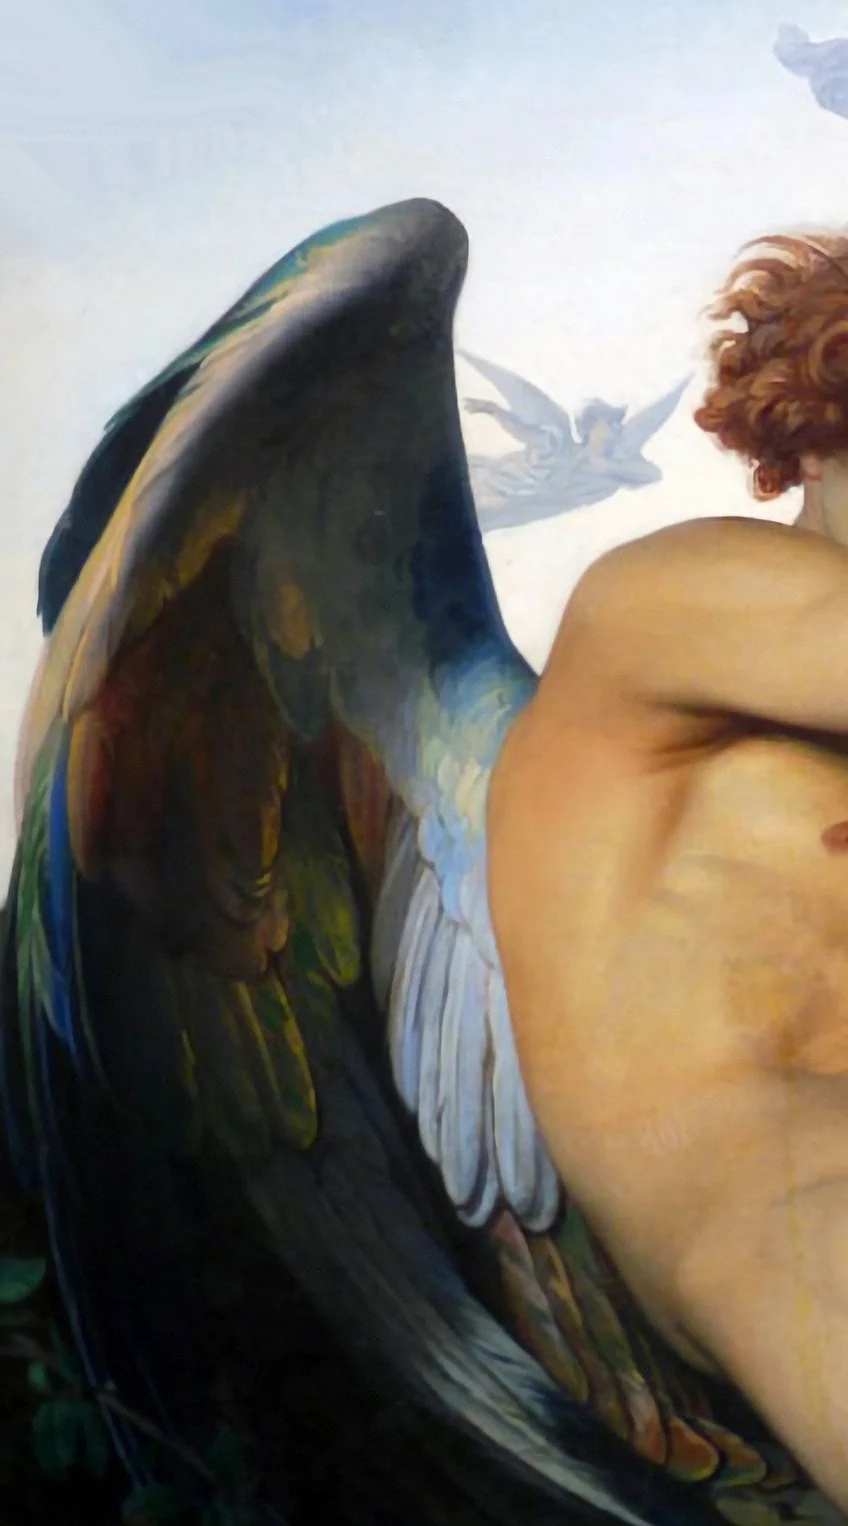 The Fallen Angel  Fallen angel art, Cabanel, Renaissance art paintings